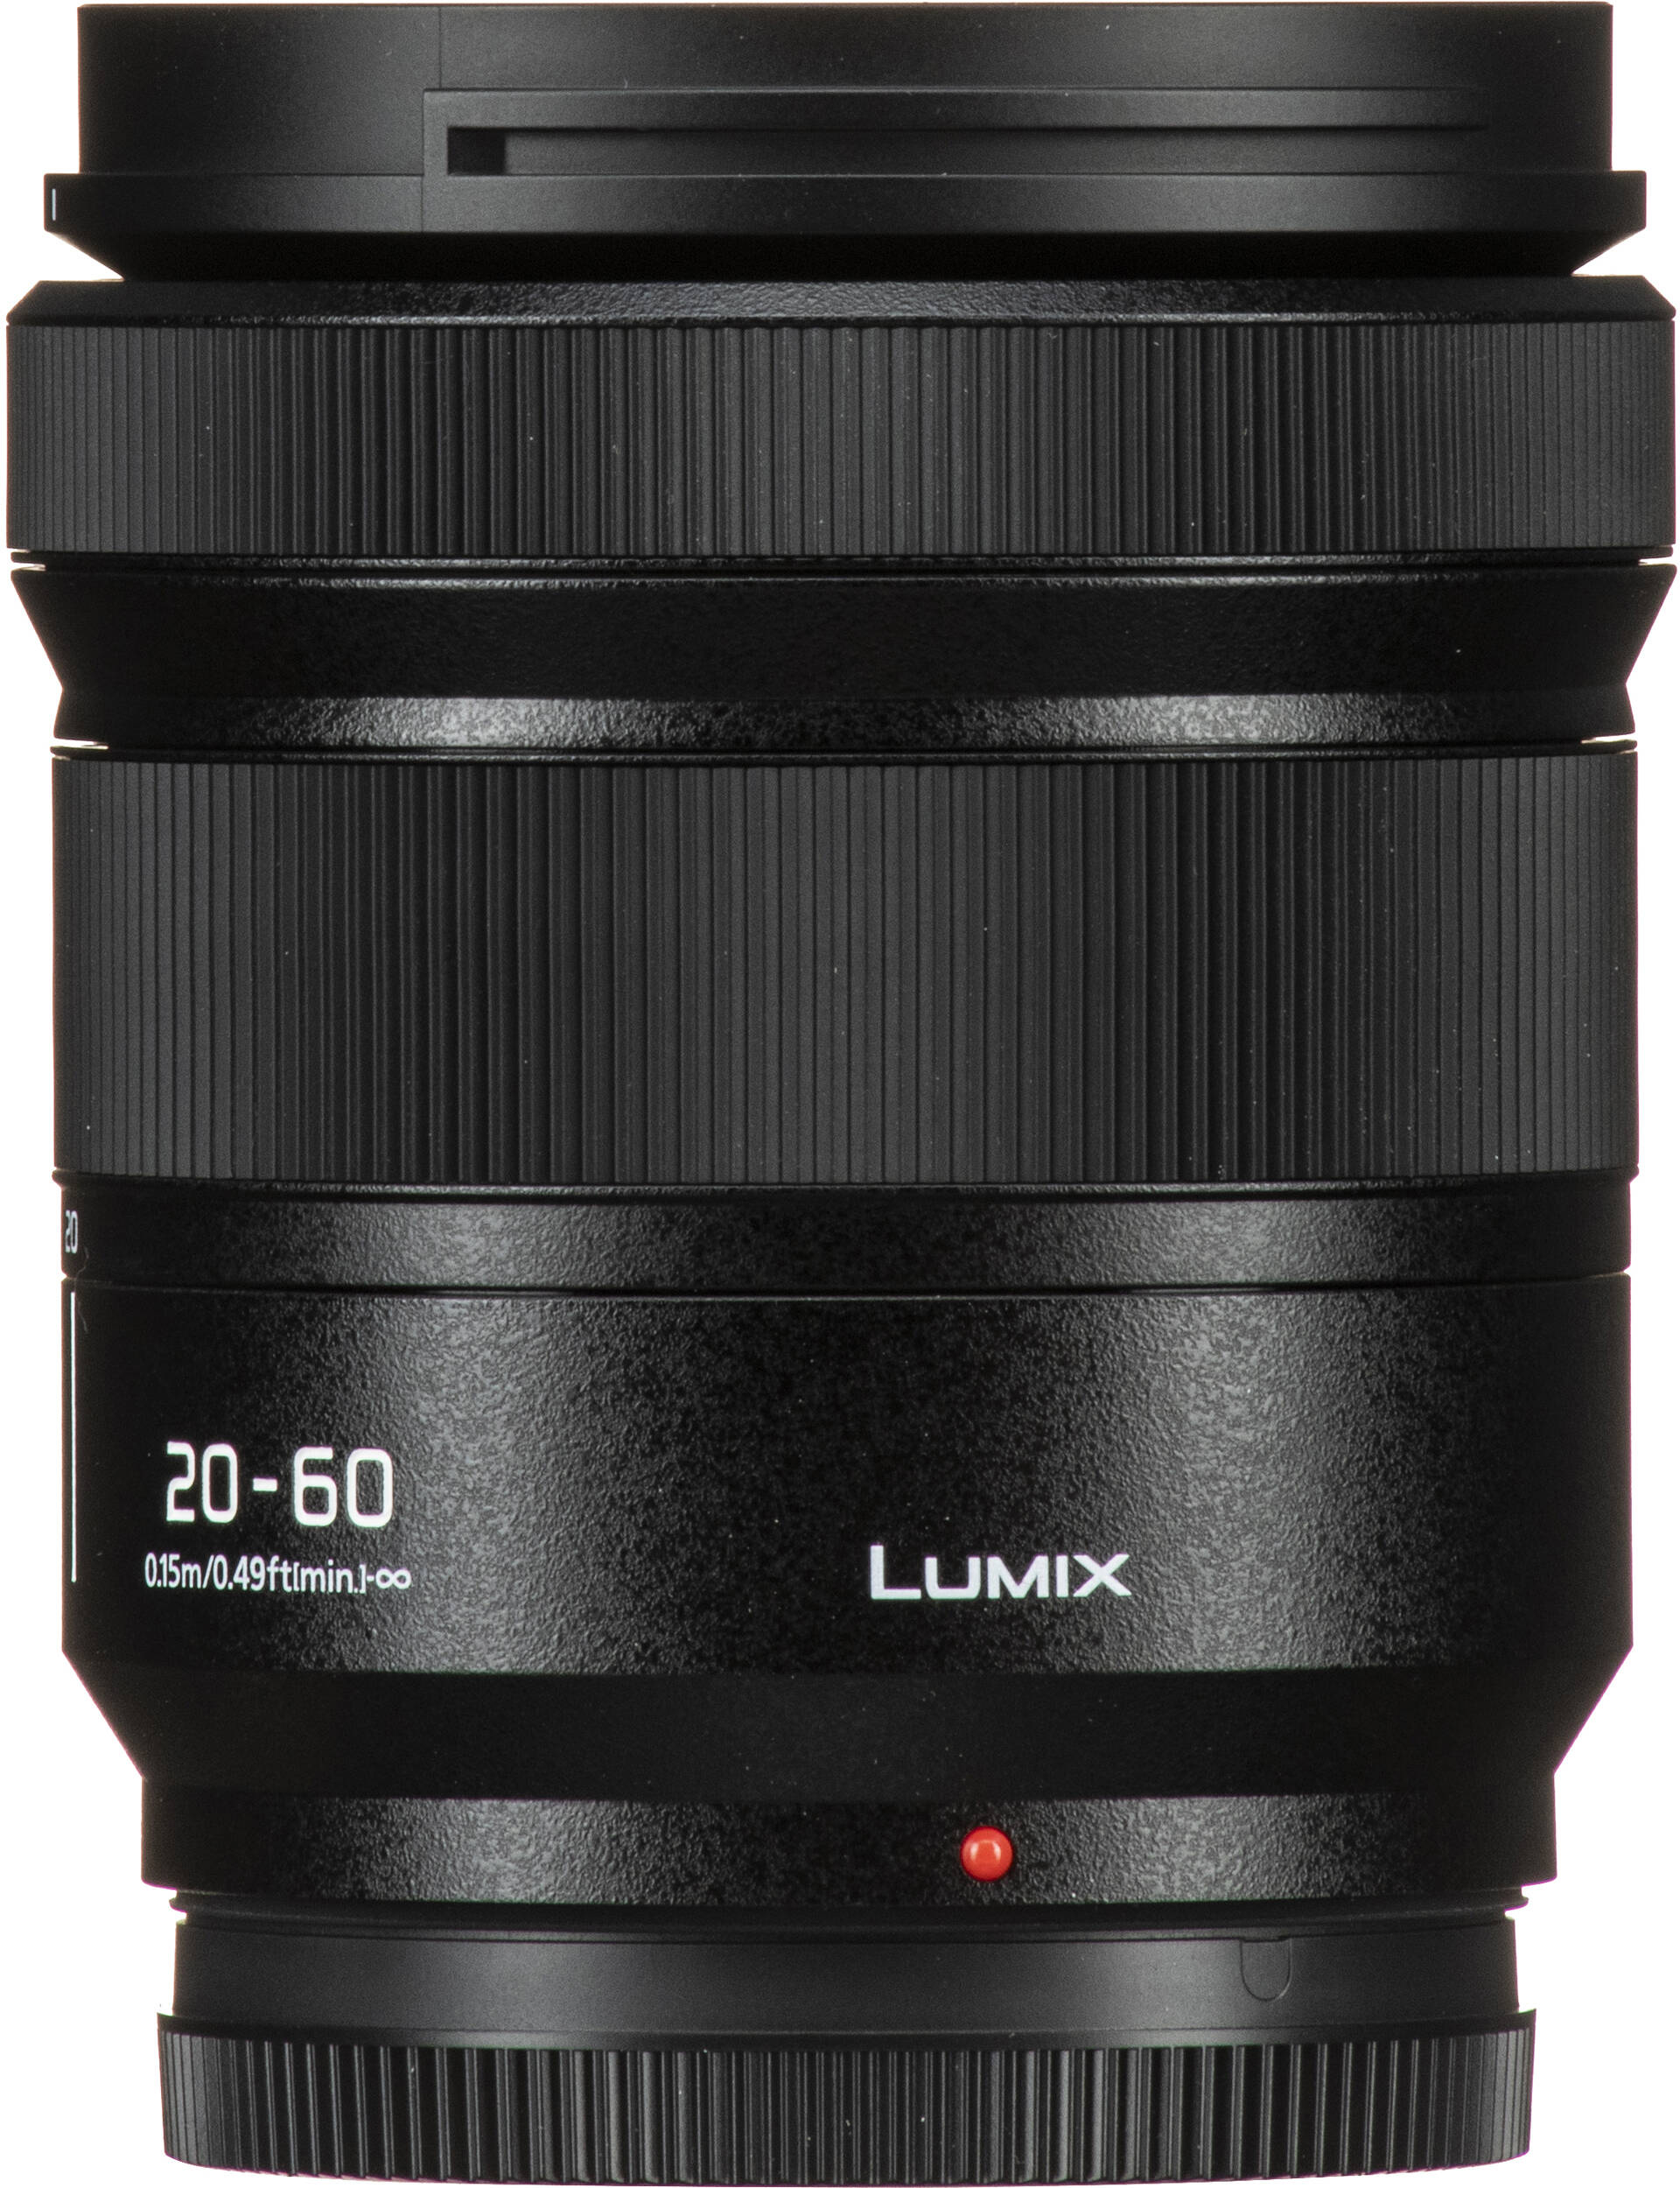 Фотоапарат Panasonic Lumix DC-S9 + 20-60mm f/3.5-5.6 Crimson Red (DC-S9KE-R)фото17